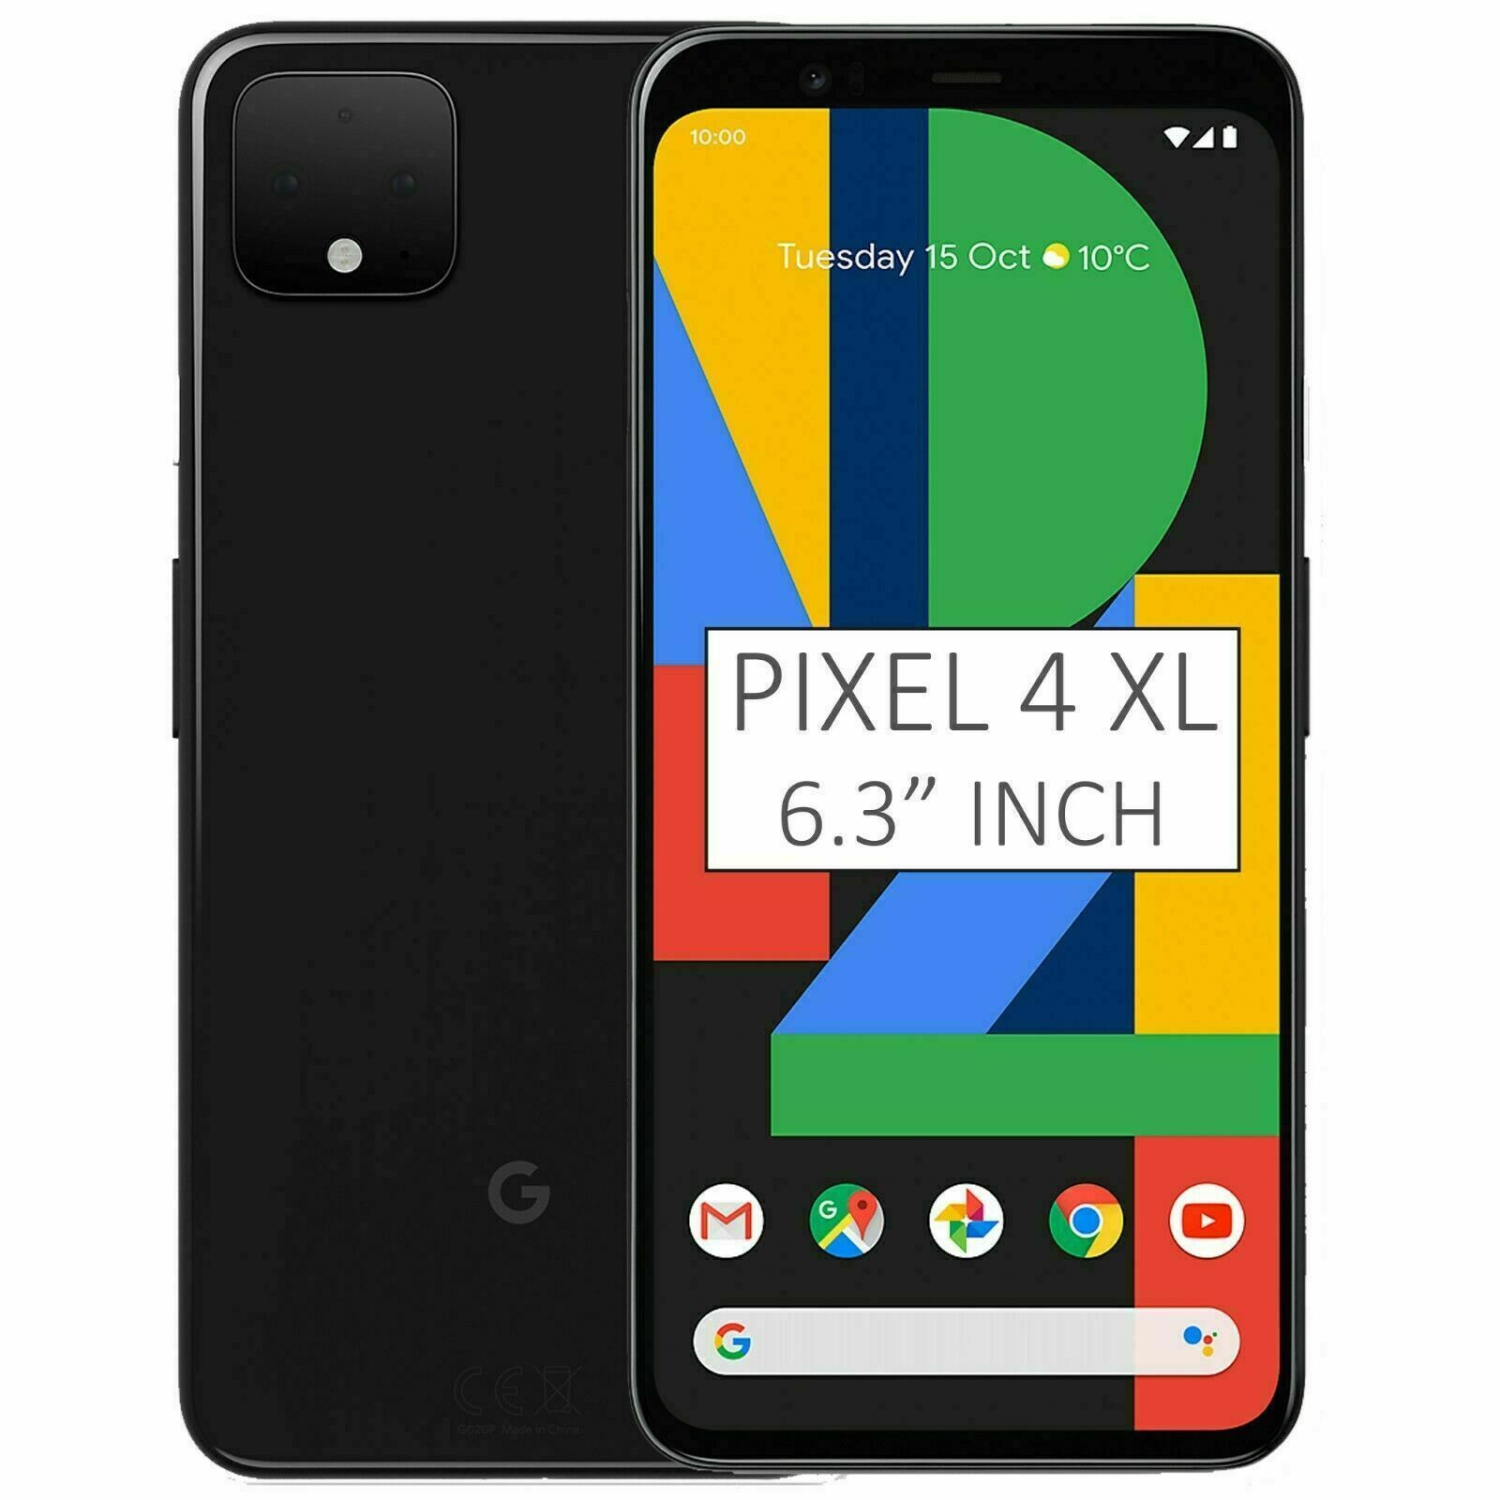 Refurbished (Good) - Google Pixel 4 XL 64GB Smartphone - Just Black - Unlocked